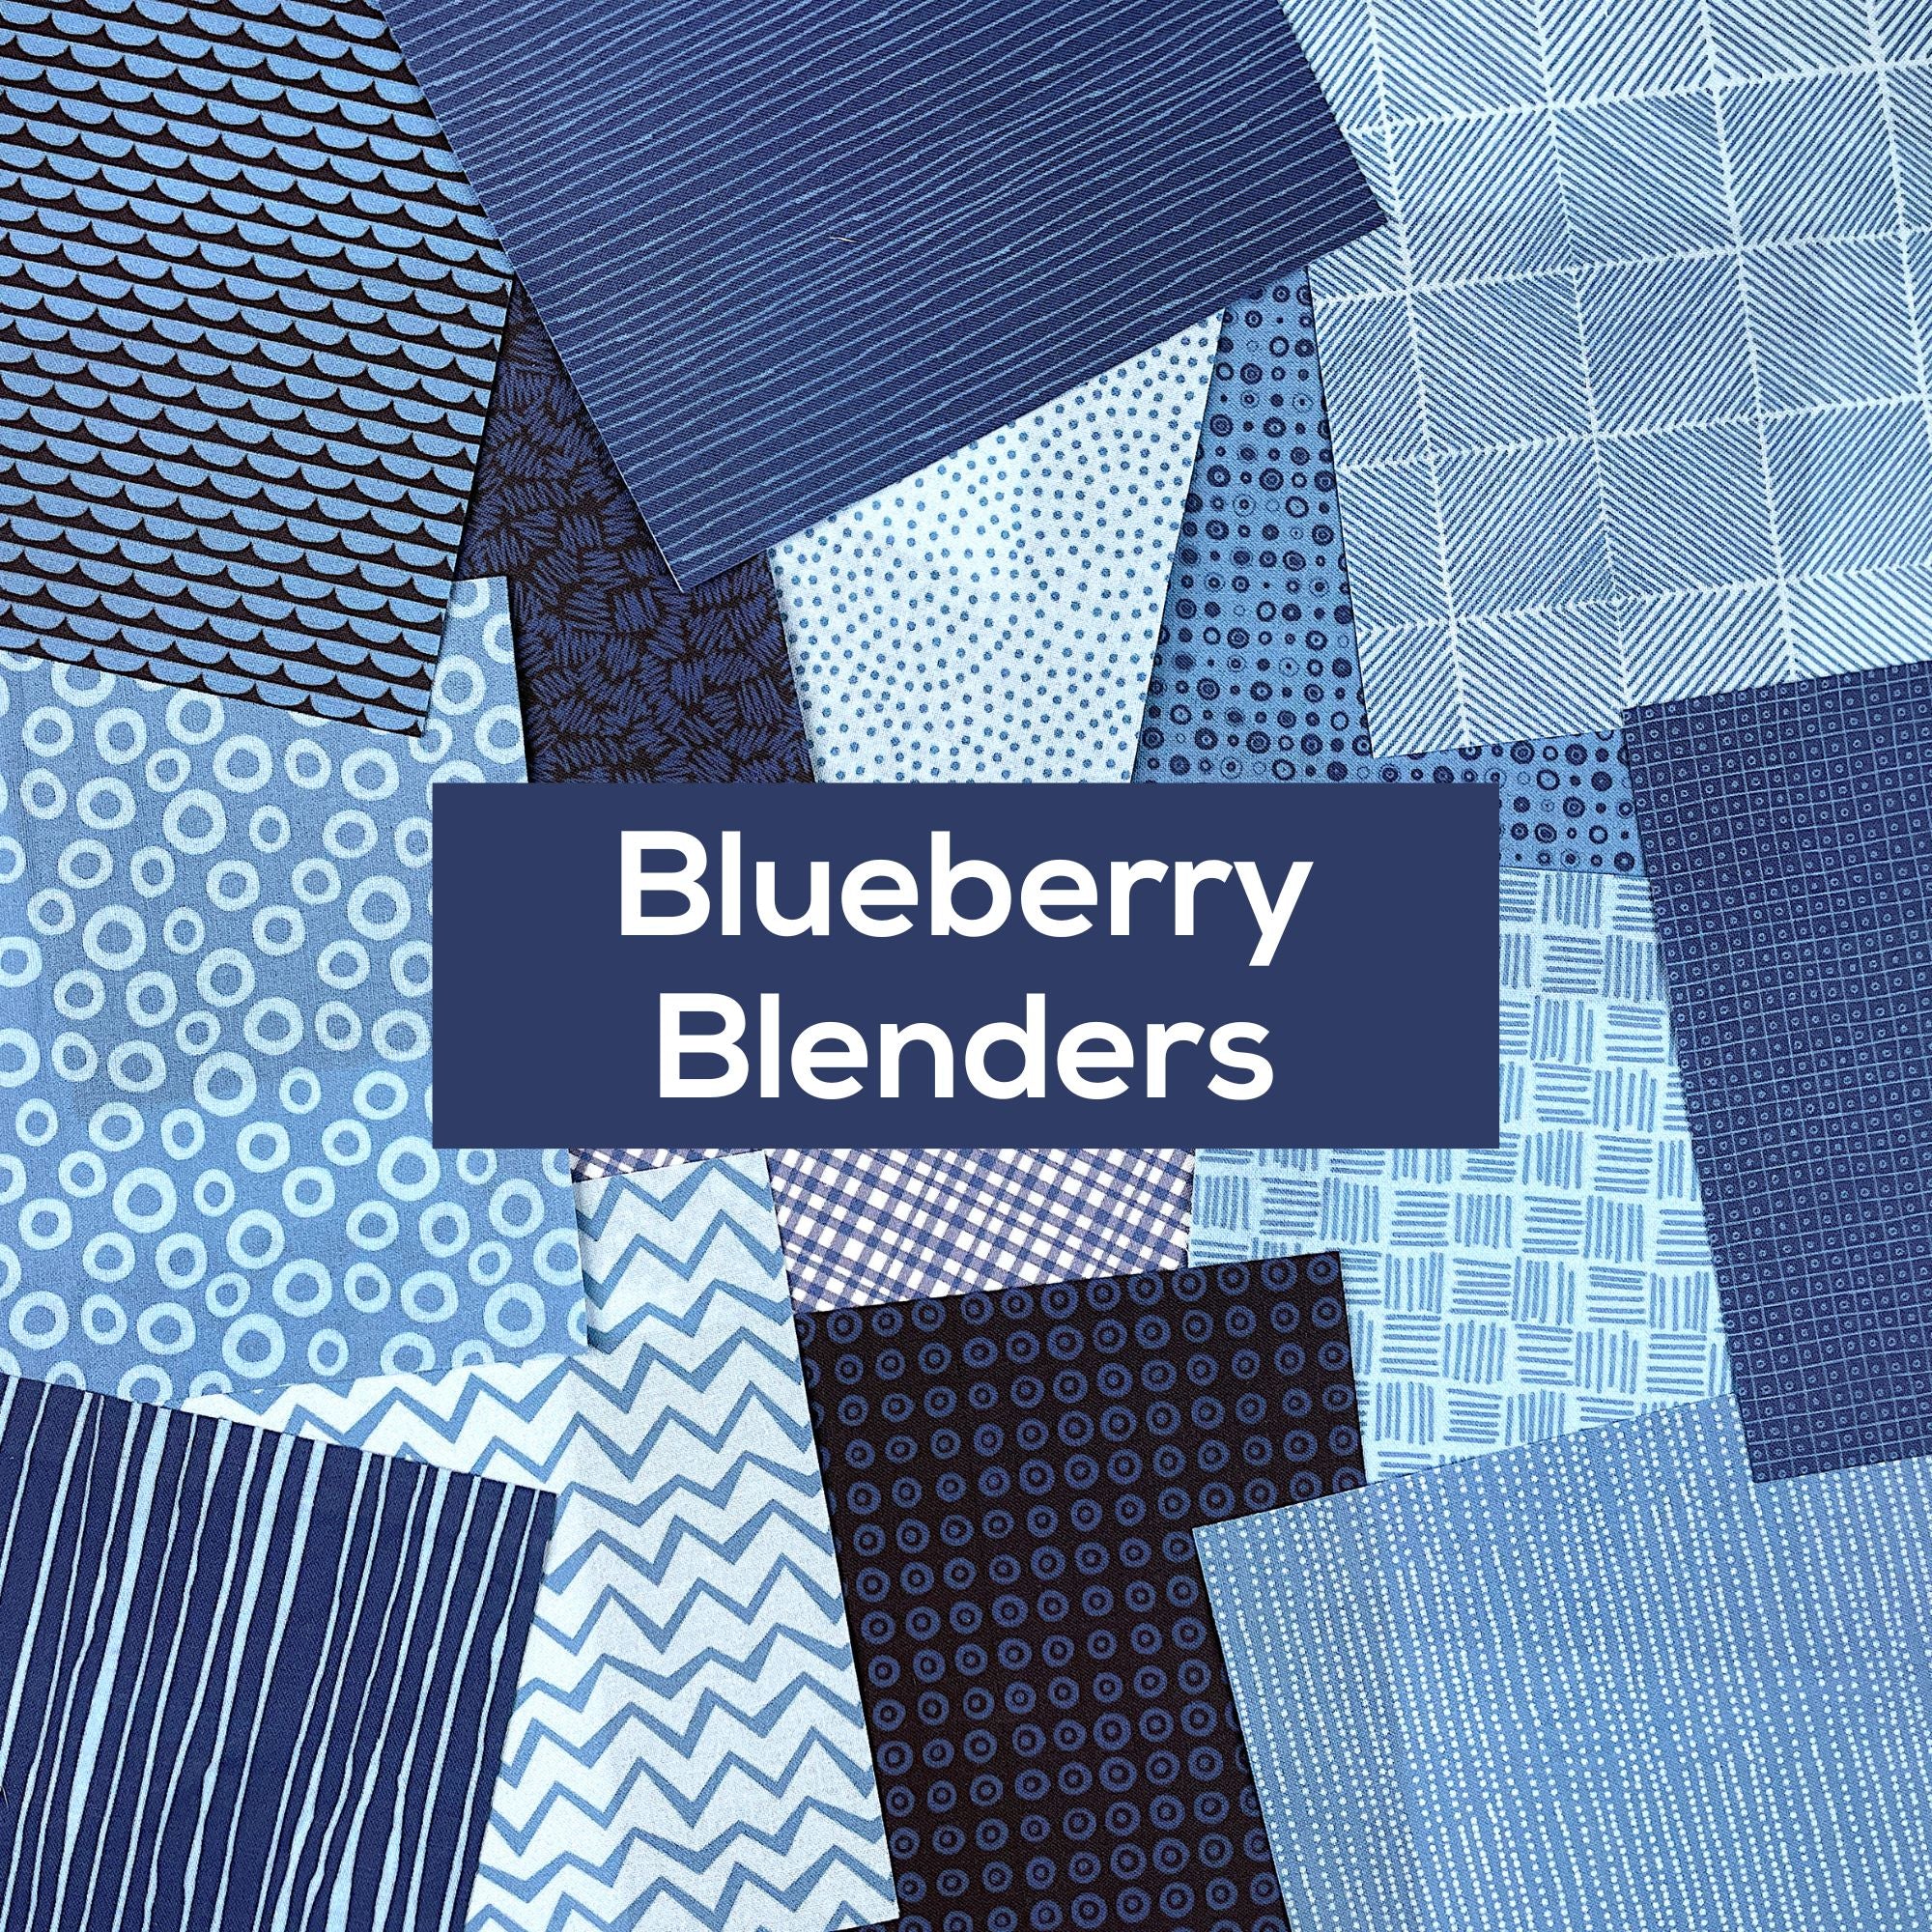 Blueberry Blenders